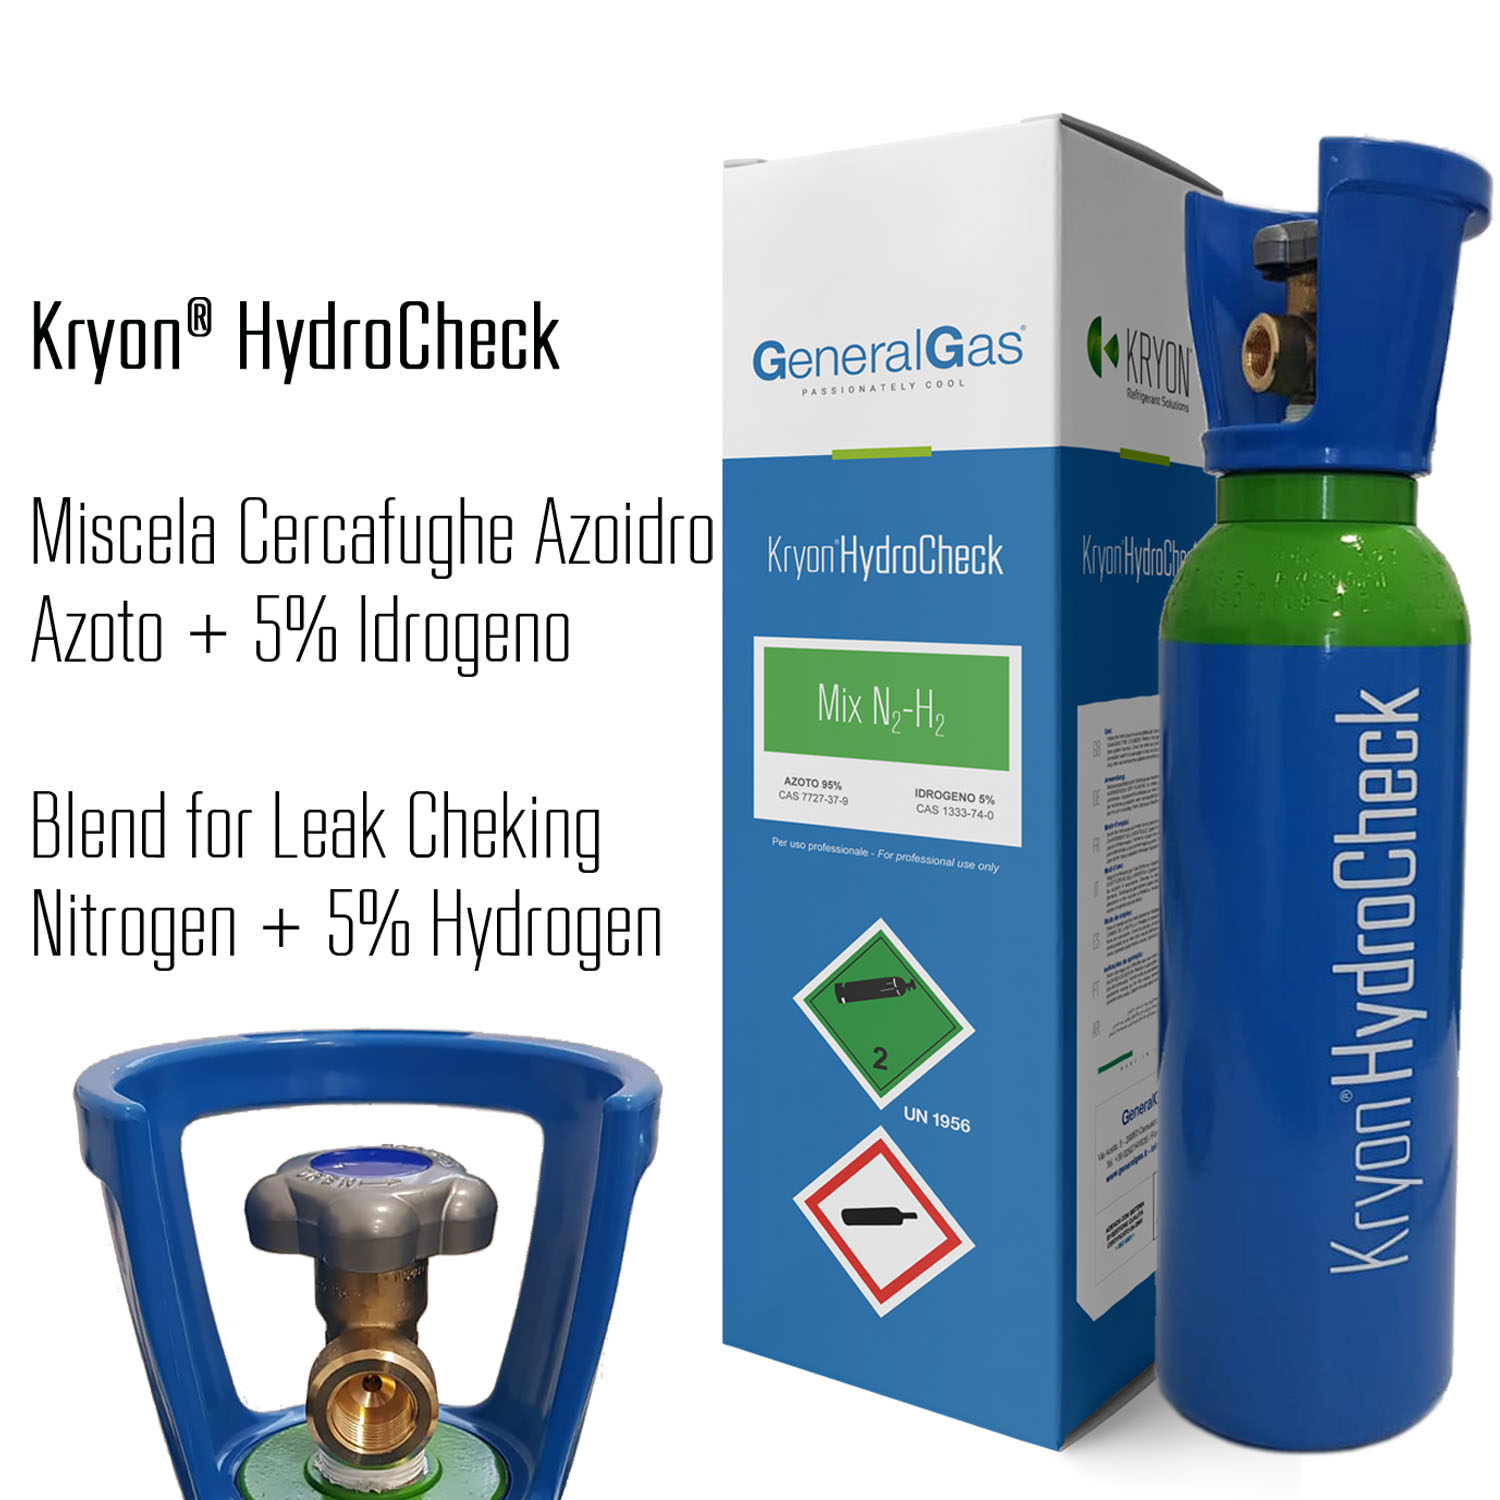 Kryon® HydroCheck 1000 lt. - bombola azoto 5% idrogeno (miscela cercafughe azoidro) capacità 5 litri 200 bar - caricata con 1 mc di miscela, completa di valvola